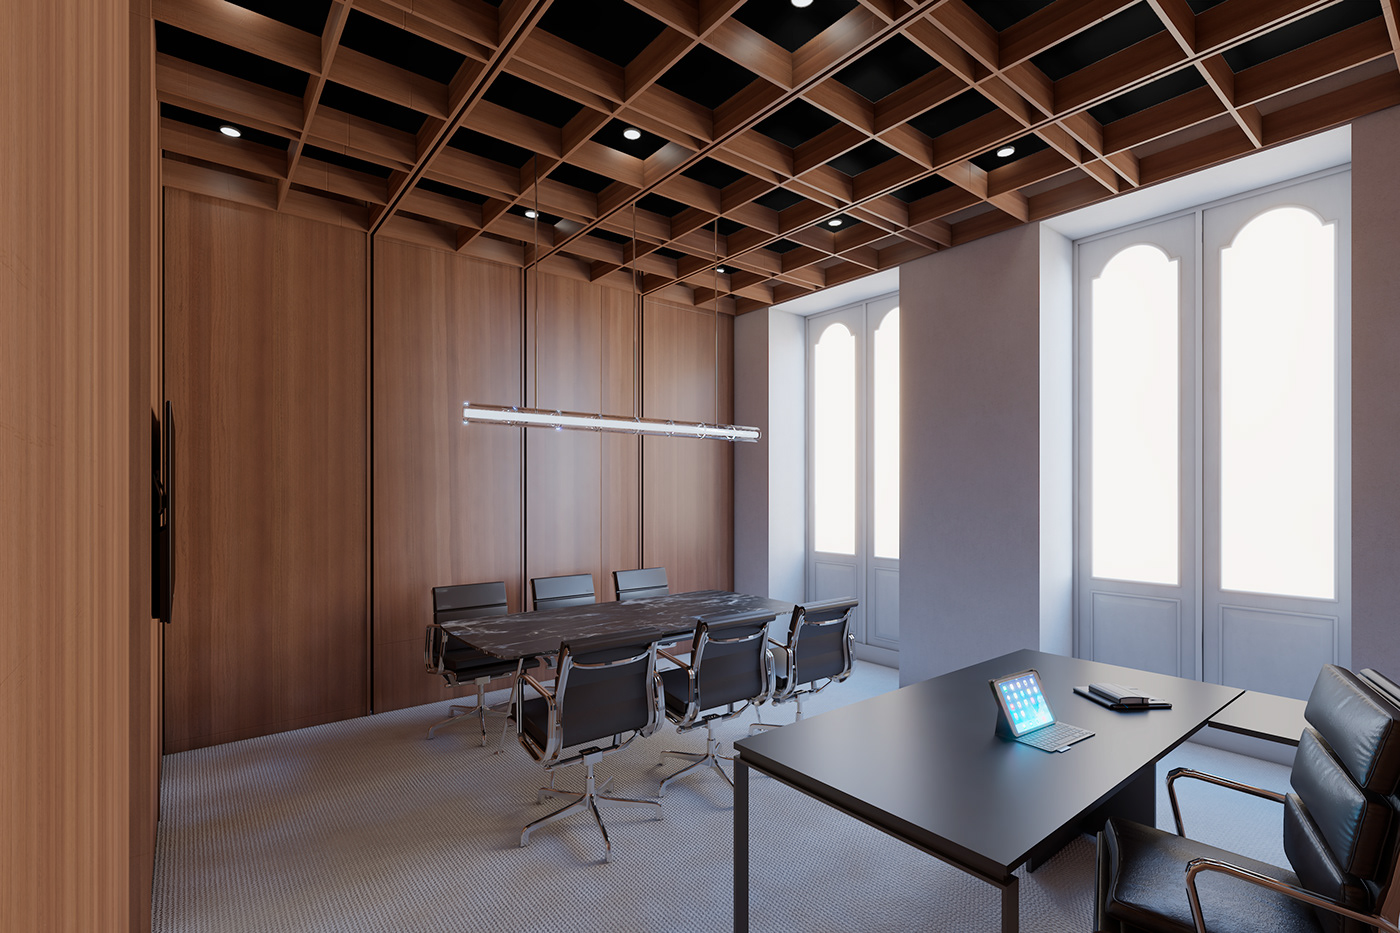 Office Interior architecture Render visualization interior design  vray archviz modern building